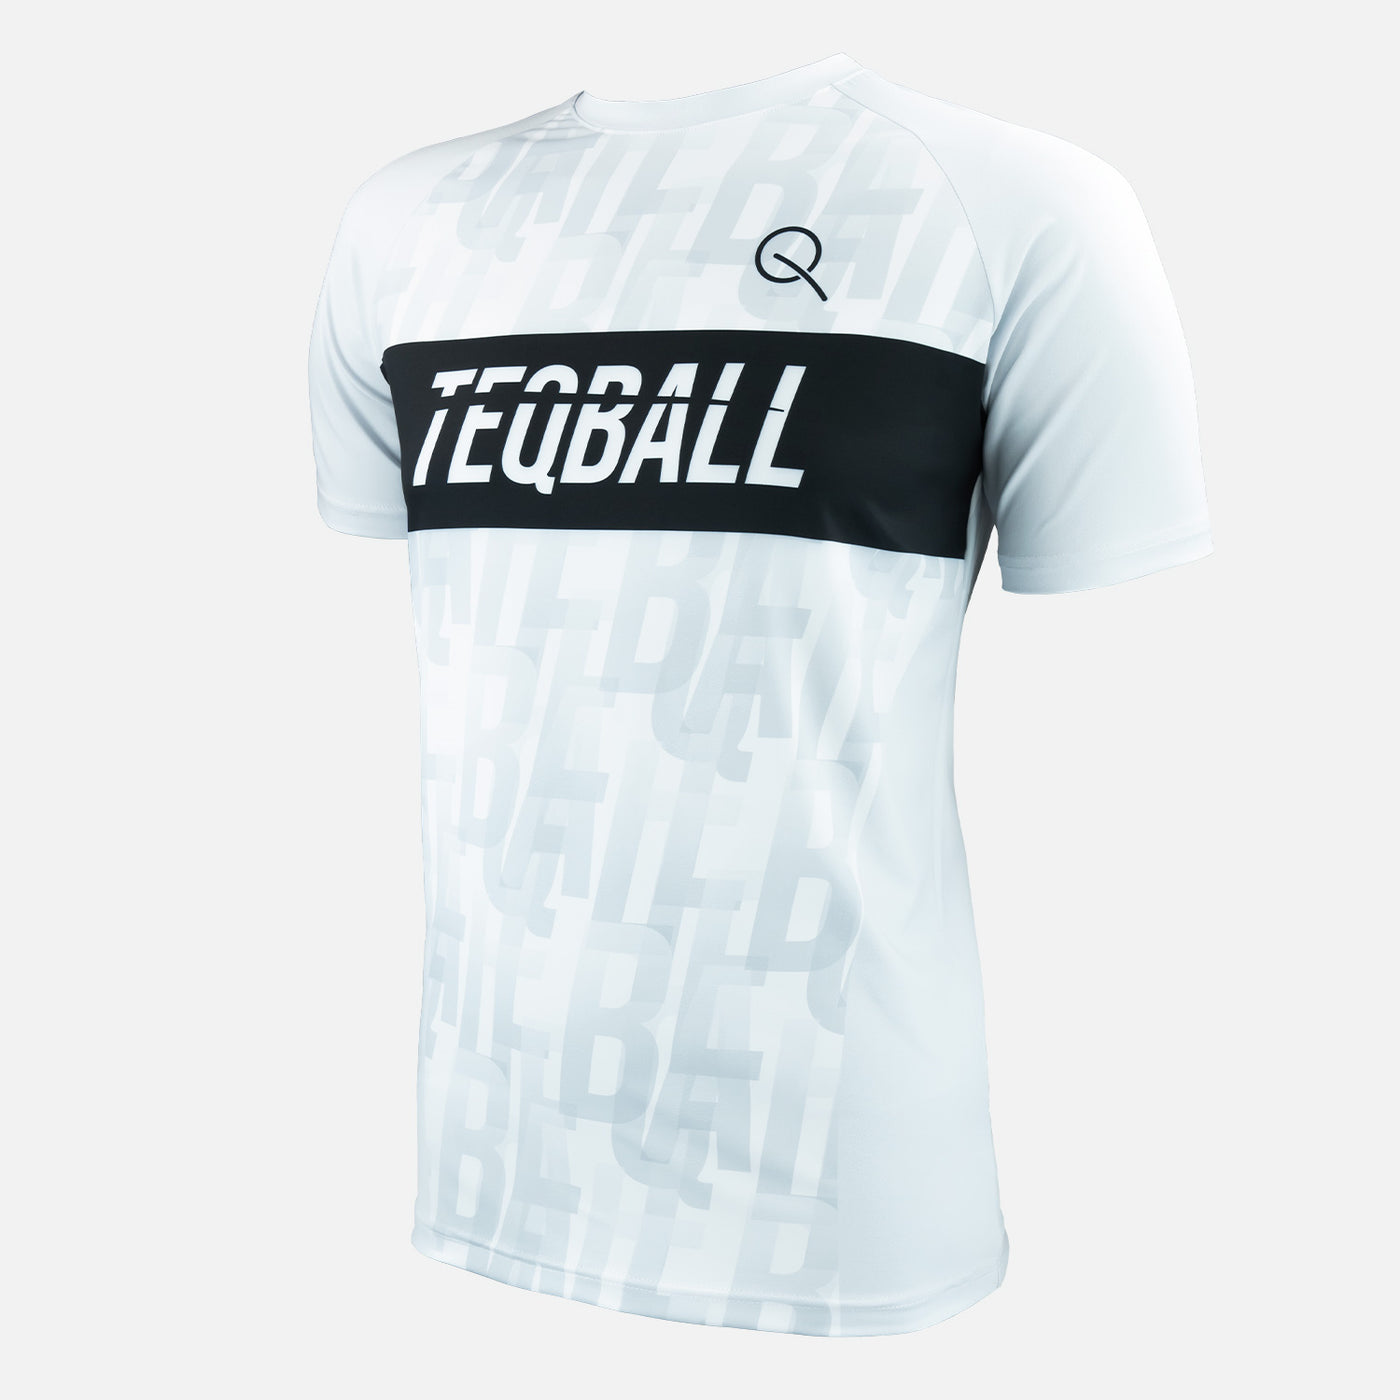 TEQBALL™ Jersey - White